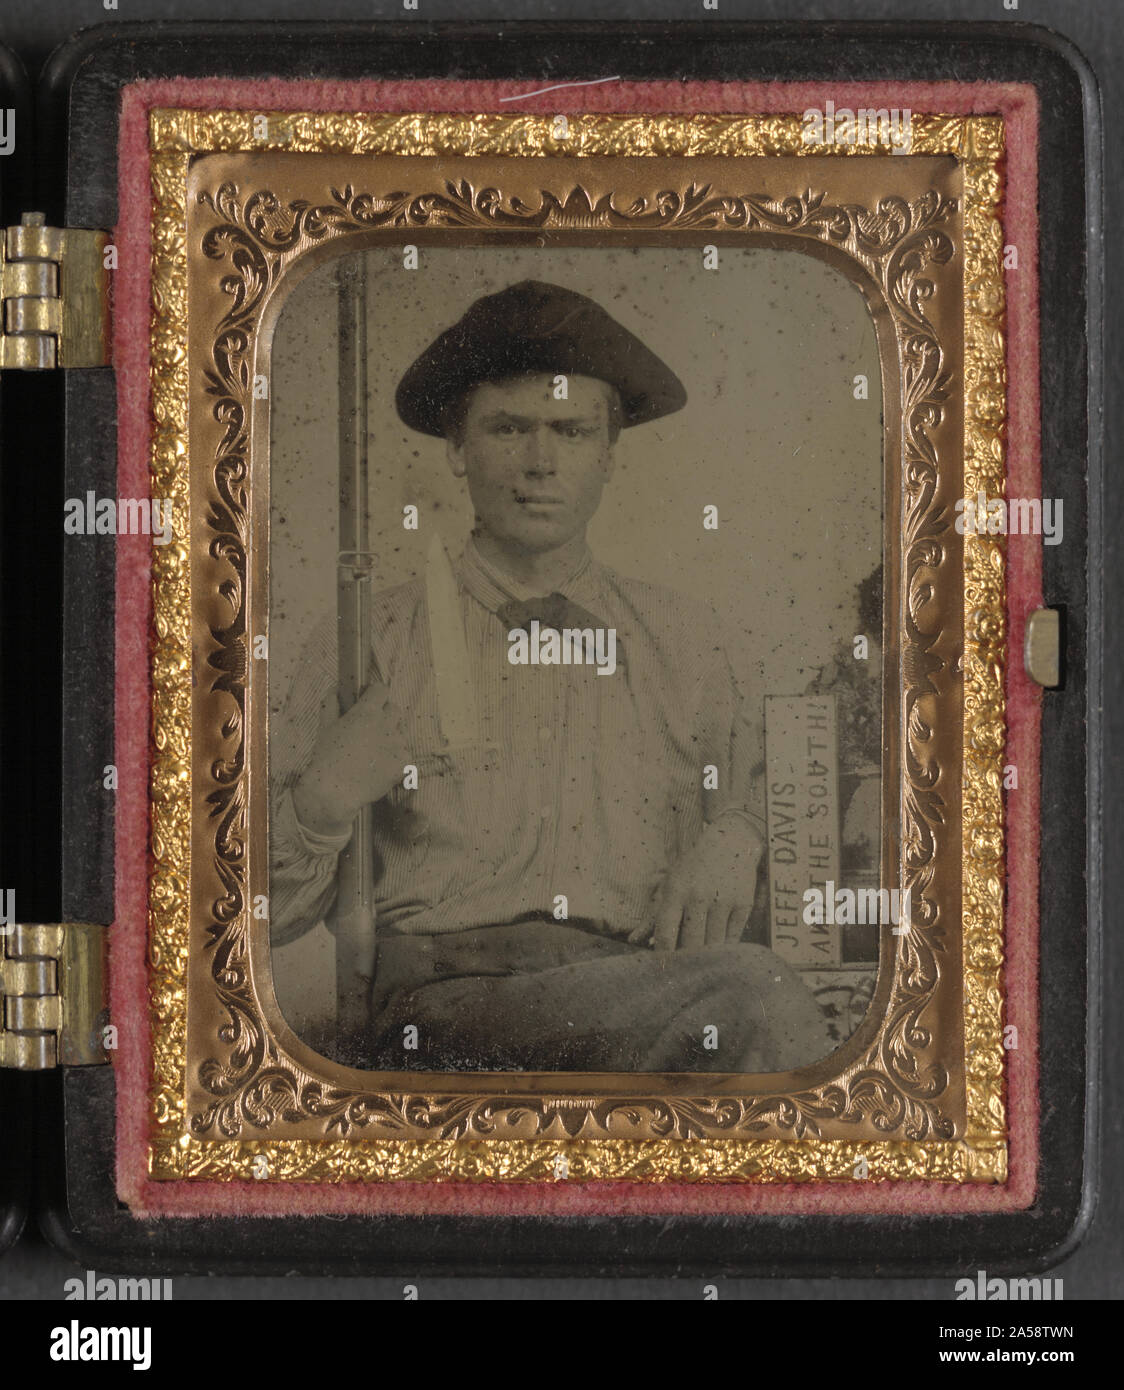 Unbekannter Soldat im konföderierten Infanterie Uniform mit Bowie Messer, Gewehr Muskete, und Zeichen lesen Jeff Davis und der Süden! Stockfoto